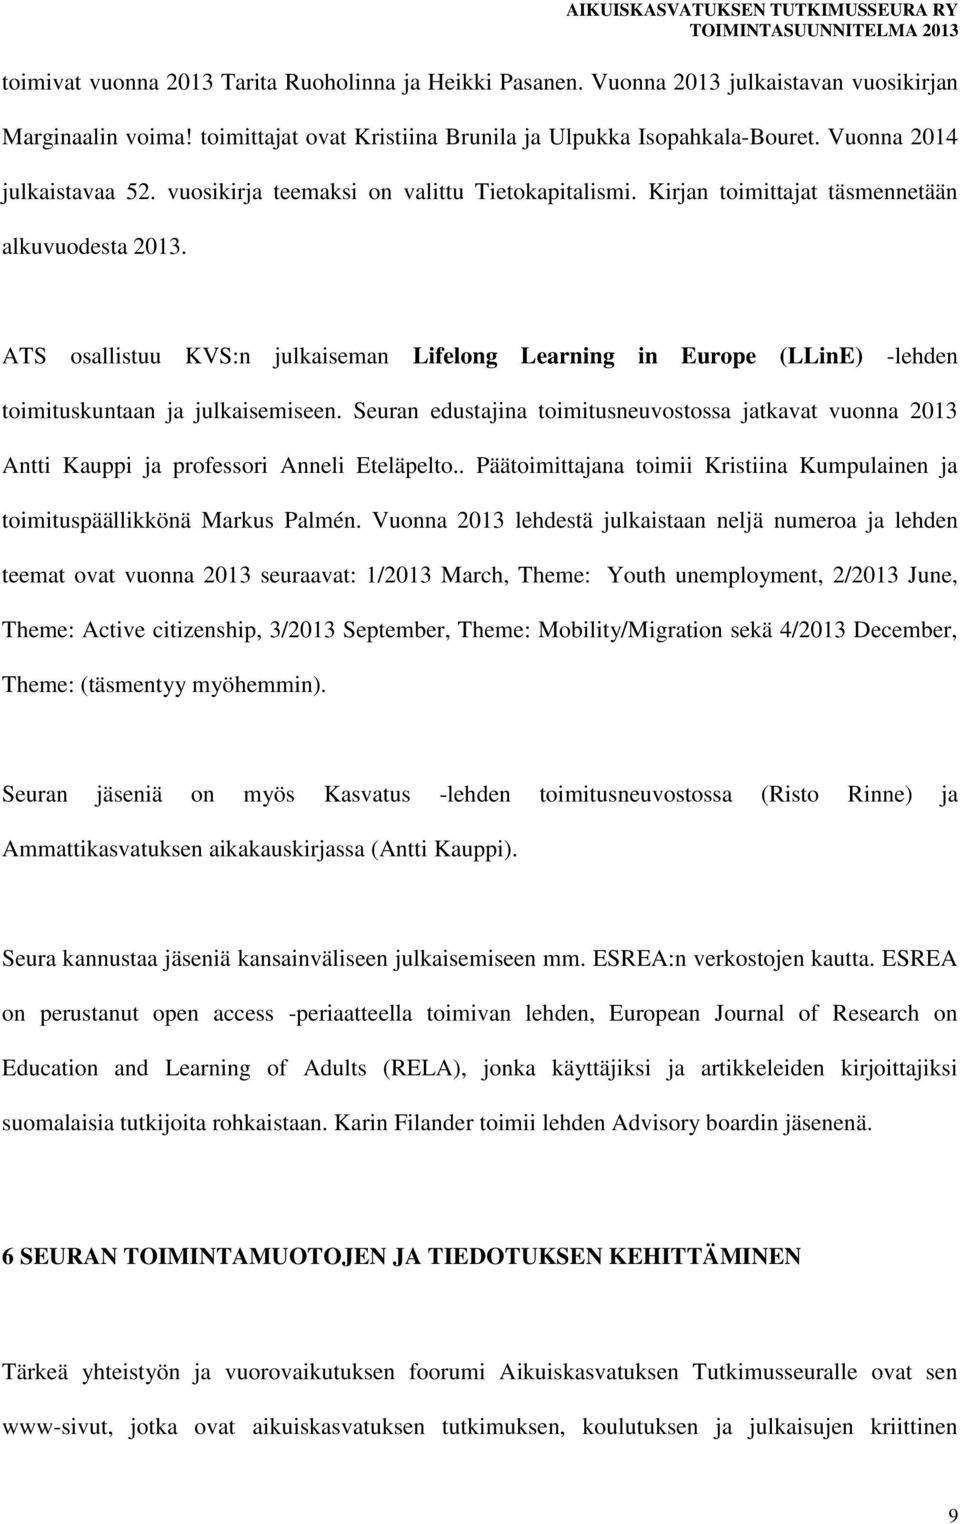 ATS osallistuu KVS:n julkaiseman Lifelong Learning in Europe (LLinE) -lehden toimituskuntaan ja julkaisemiseen.